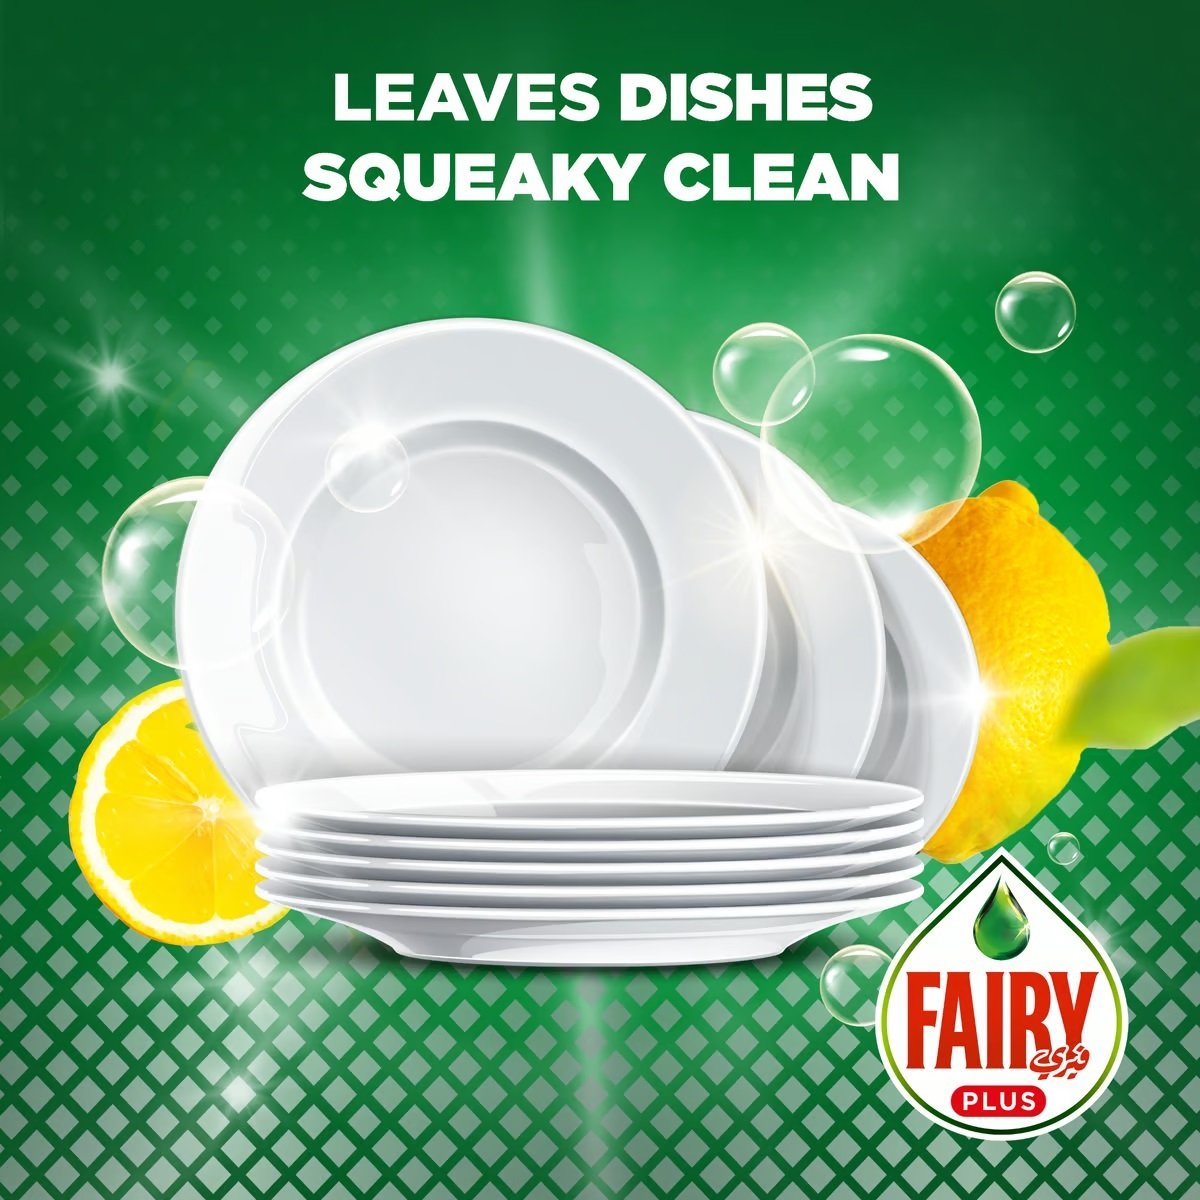 Fairy Plus Antibacterial Dishwashing Liquid Value Pack 1.25 Litres